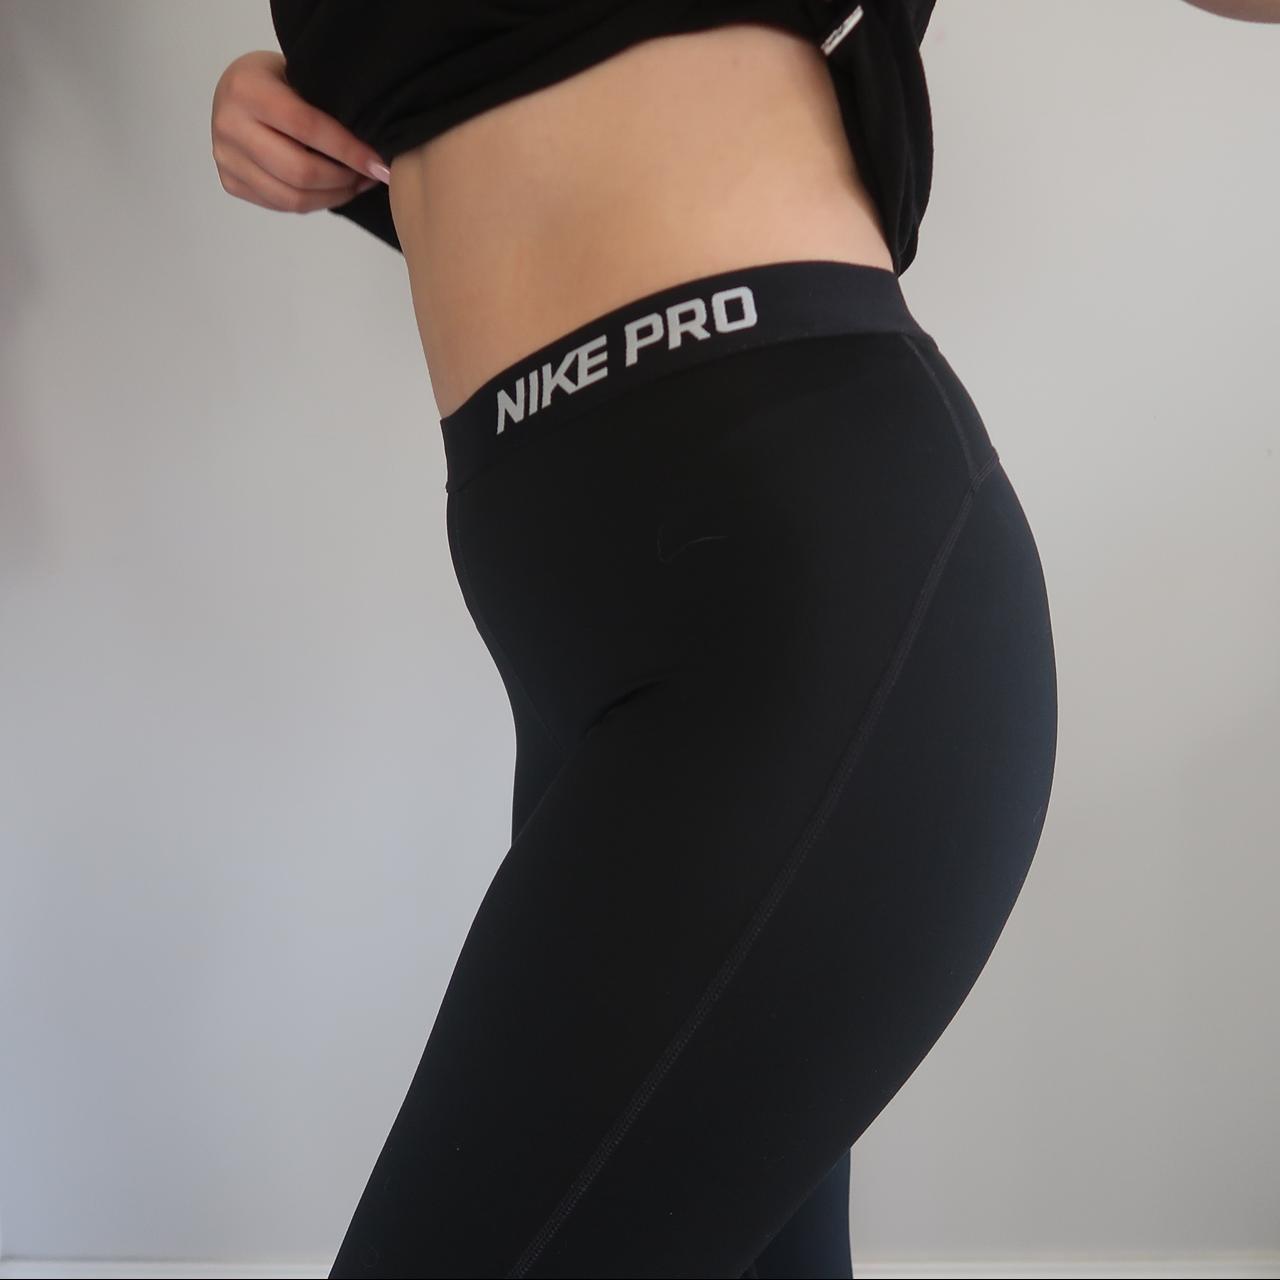 Nike pro combat legging Nwt retail $55 Make an - Depop